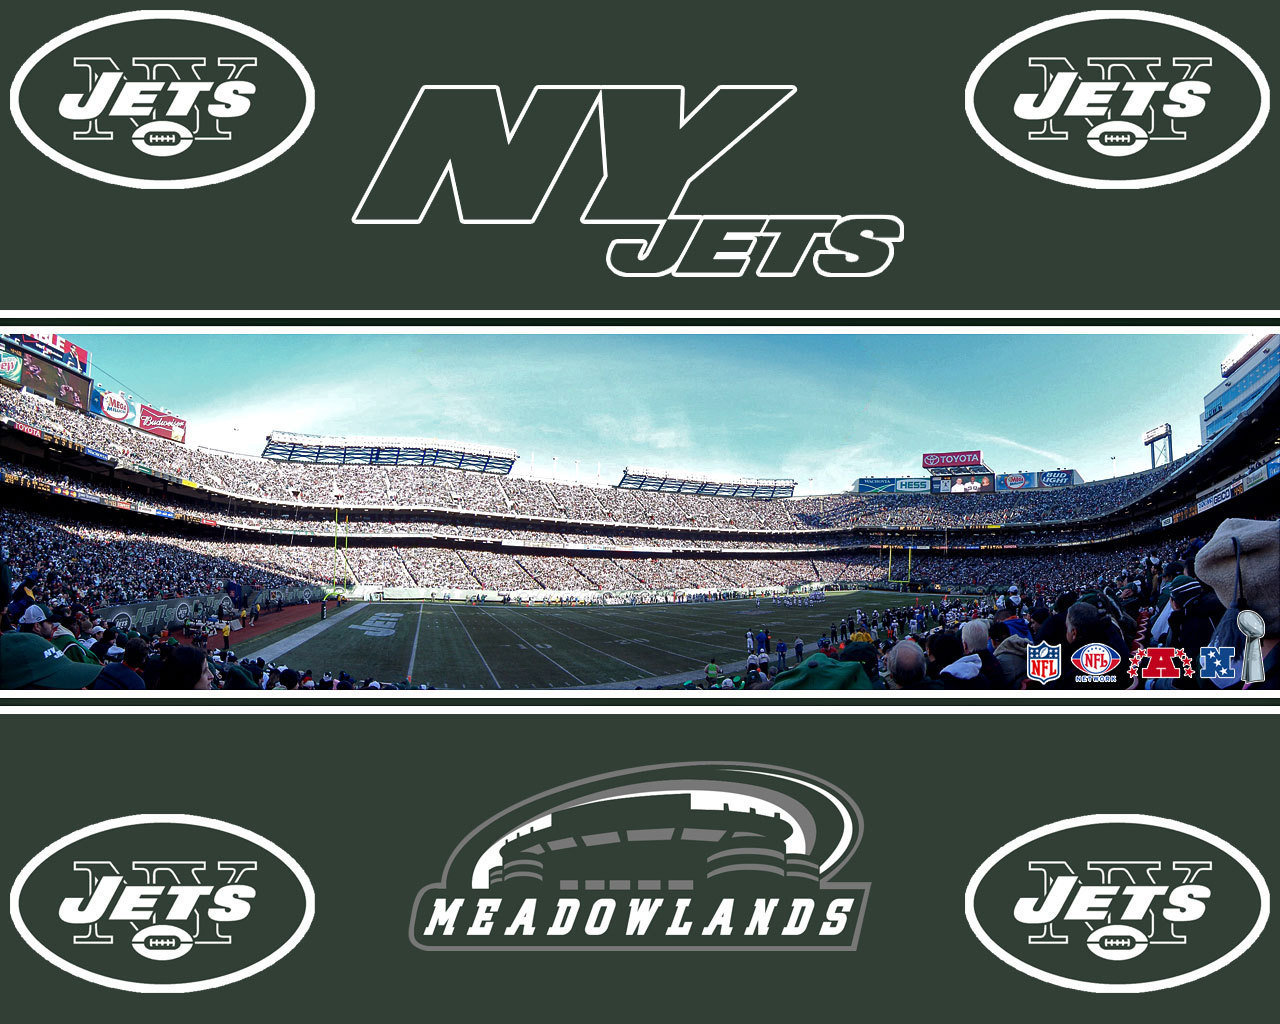 New York Jets NY Jets